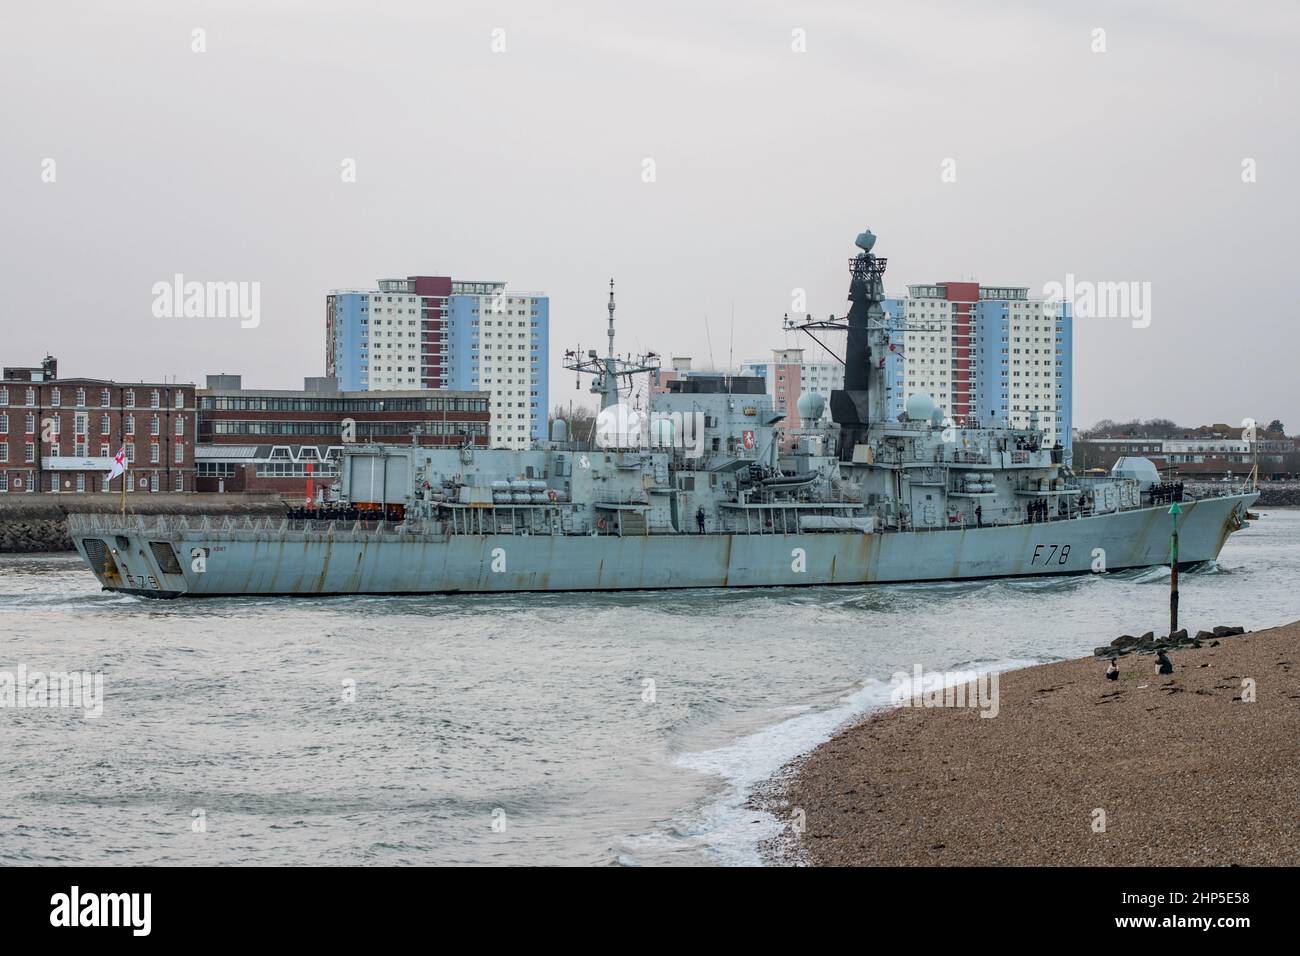 Die HMS Kent (F78) kehrte am Nachmittag des 17th. Februar 2022 nach Portsmouth, Großbritannien, zurück, nachdem sie russische Marinestützeinheiten beschattet hatte. Stockfoto